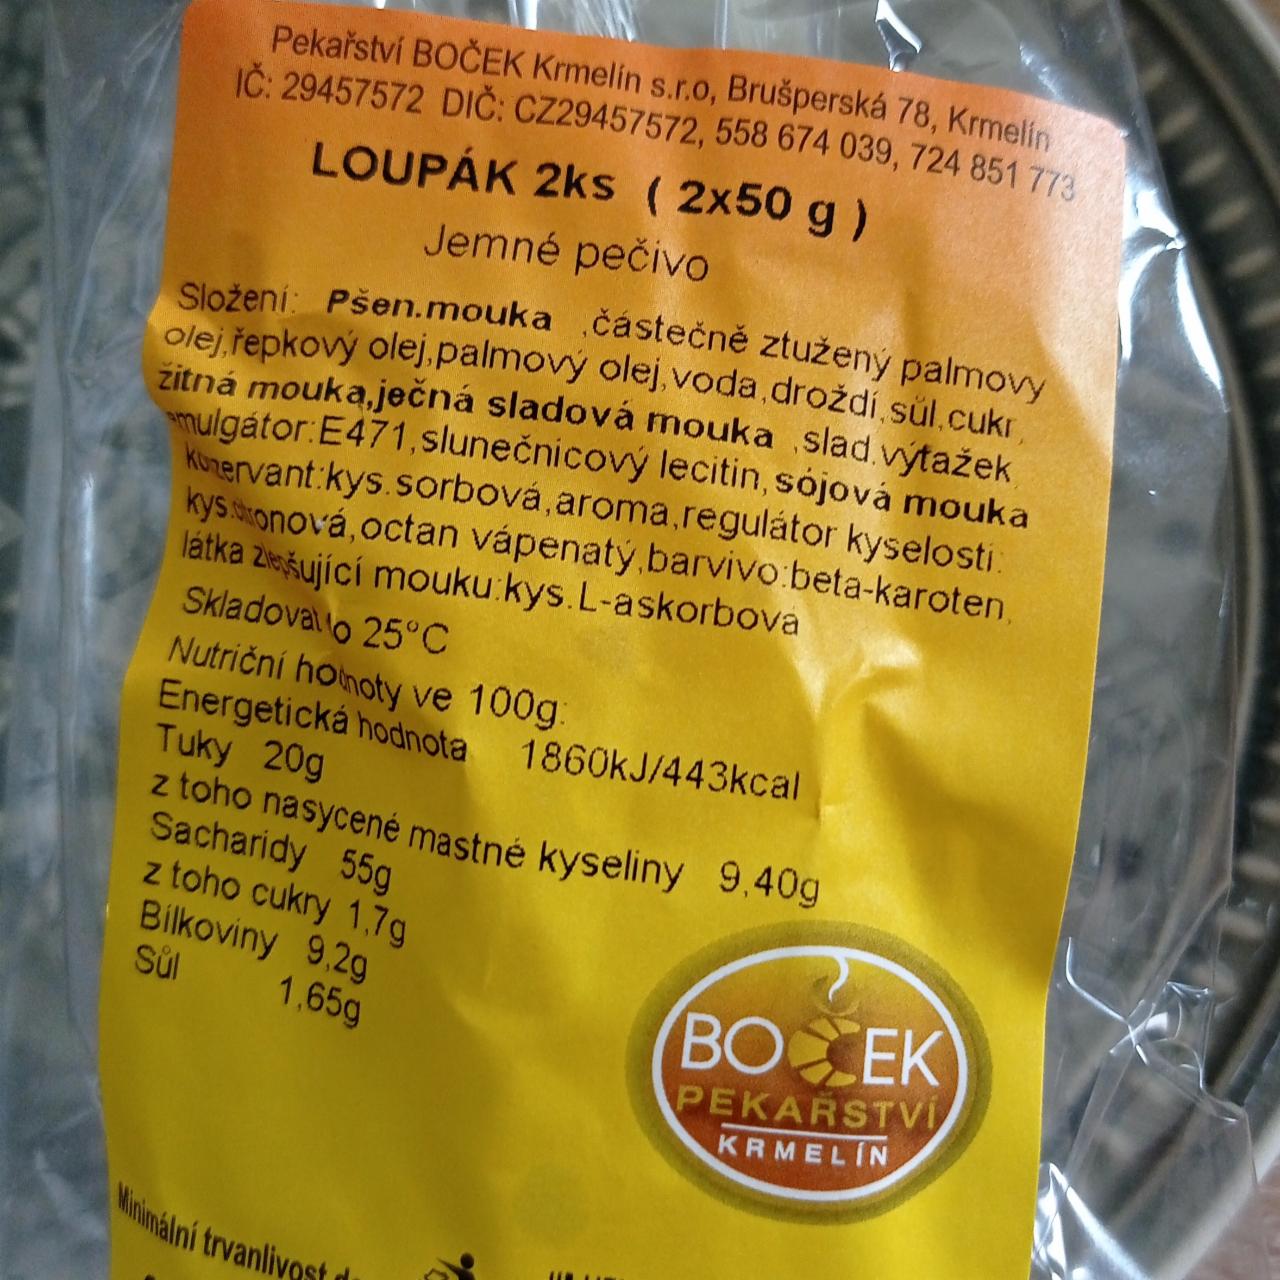 Fotografie - Loupák Boček pekařství